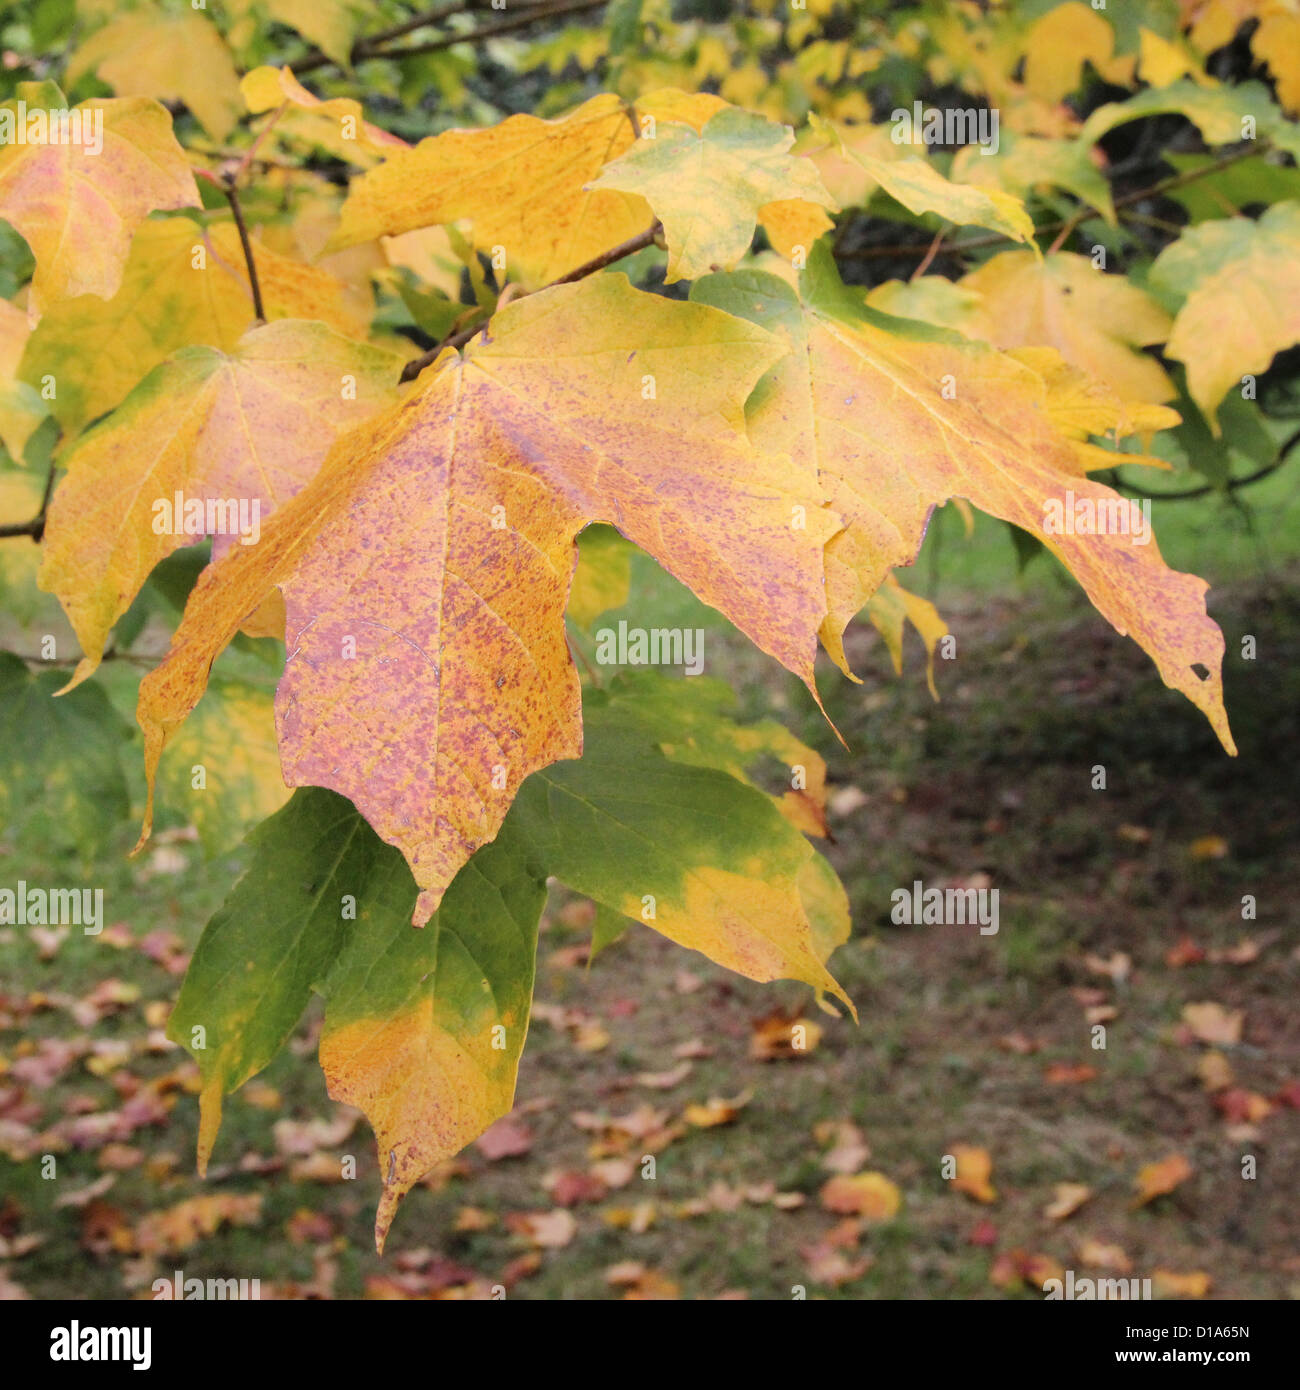 Acer saccharum subspecies nigrum ( Black Sugar Maple ) in Autumn Stock Photo